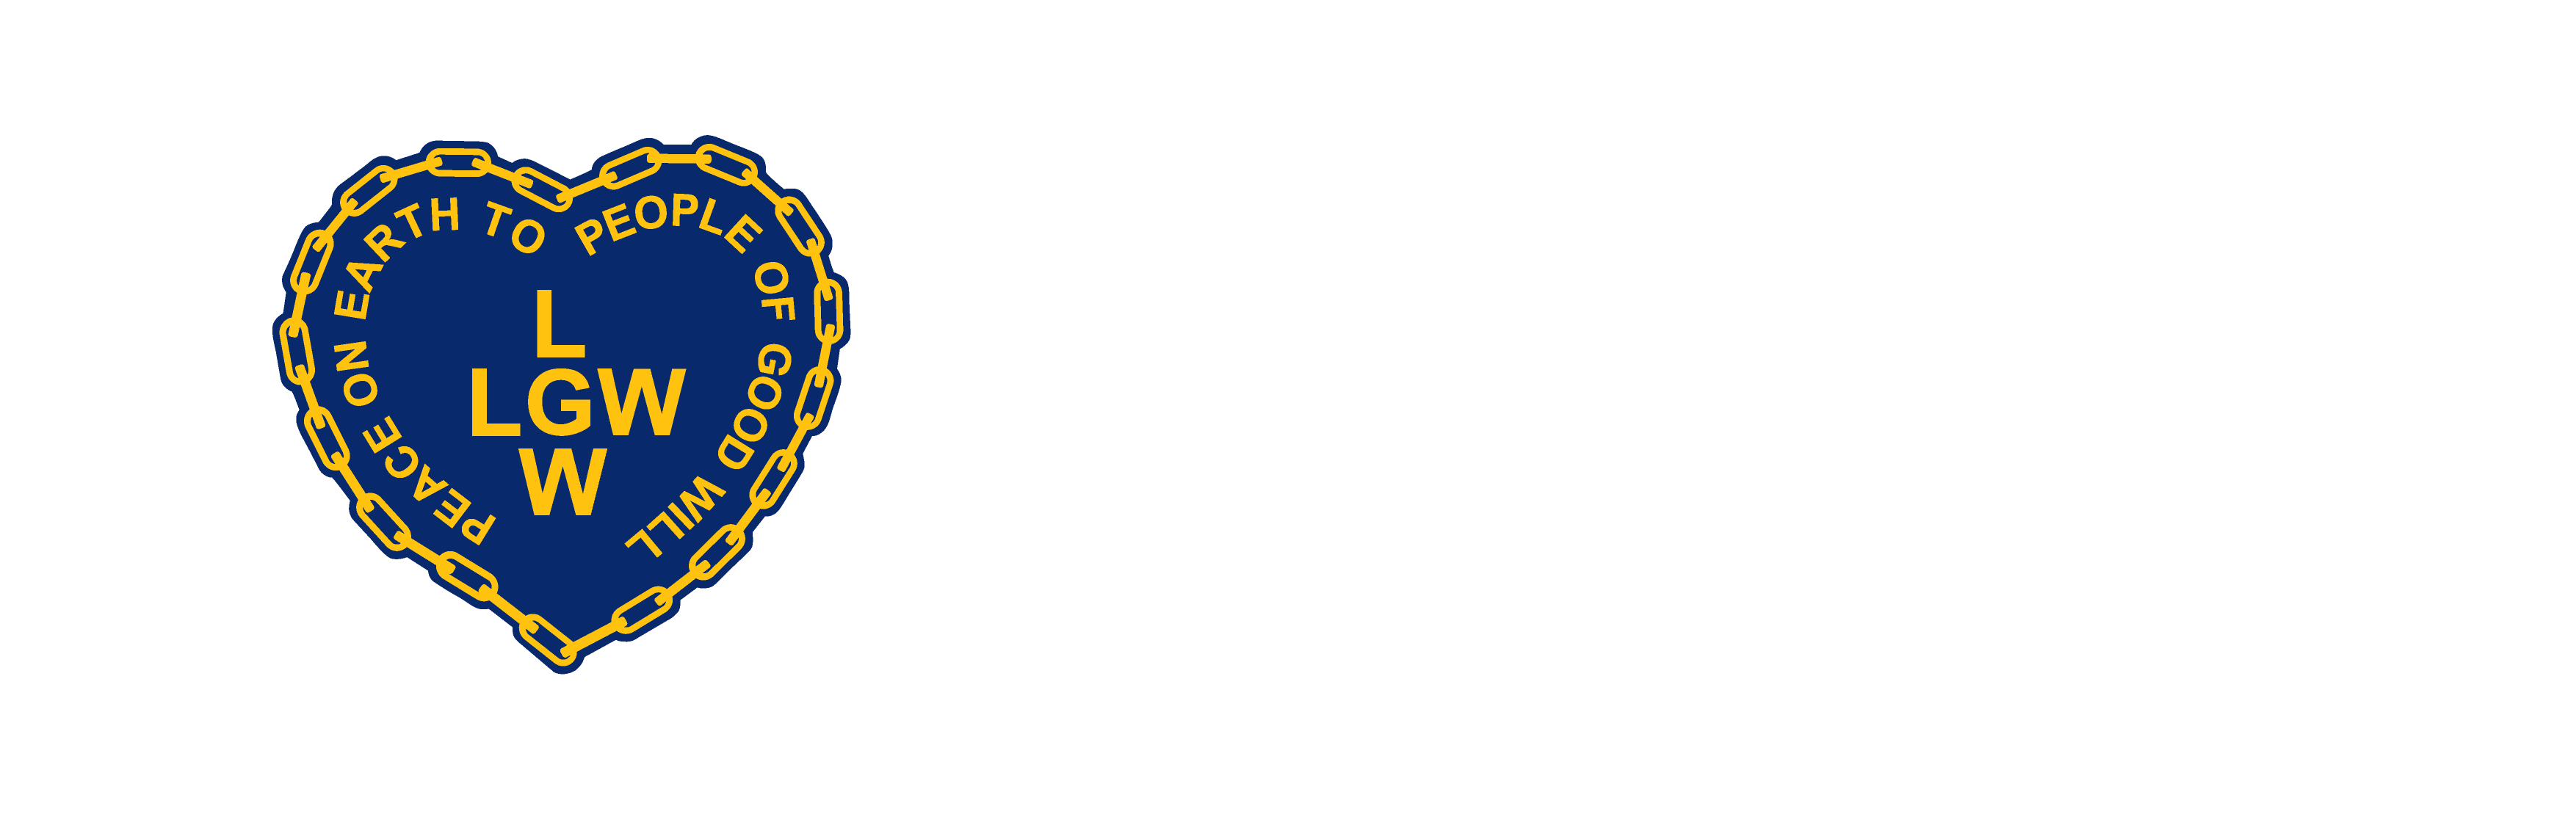 LGW - Legion of Good Will